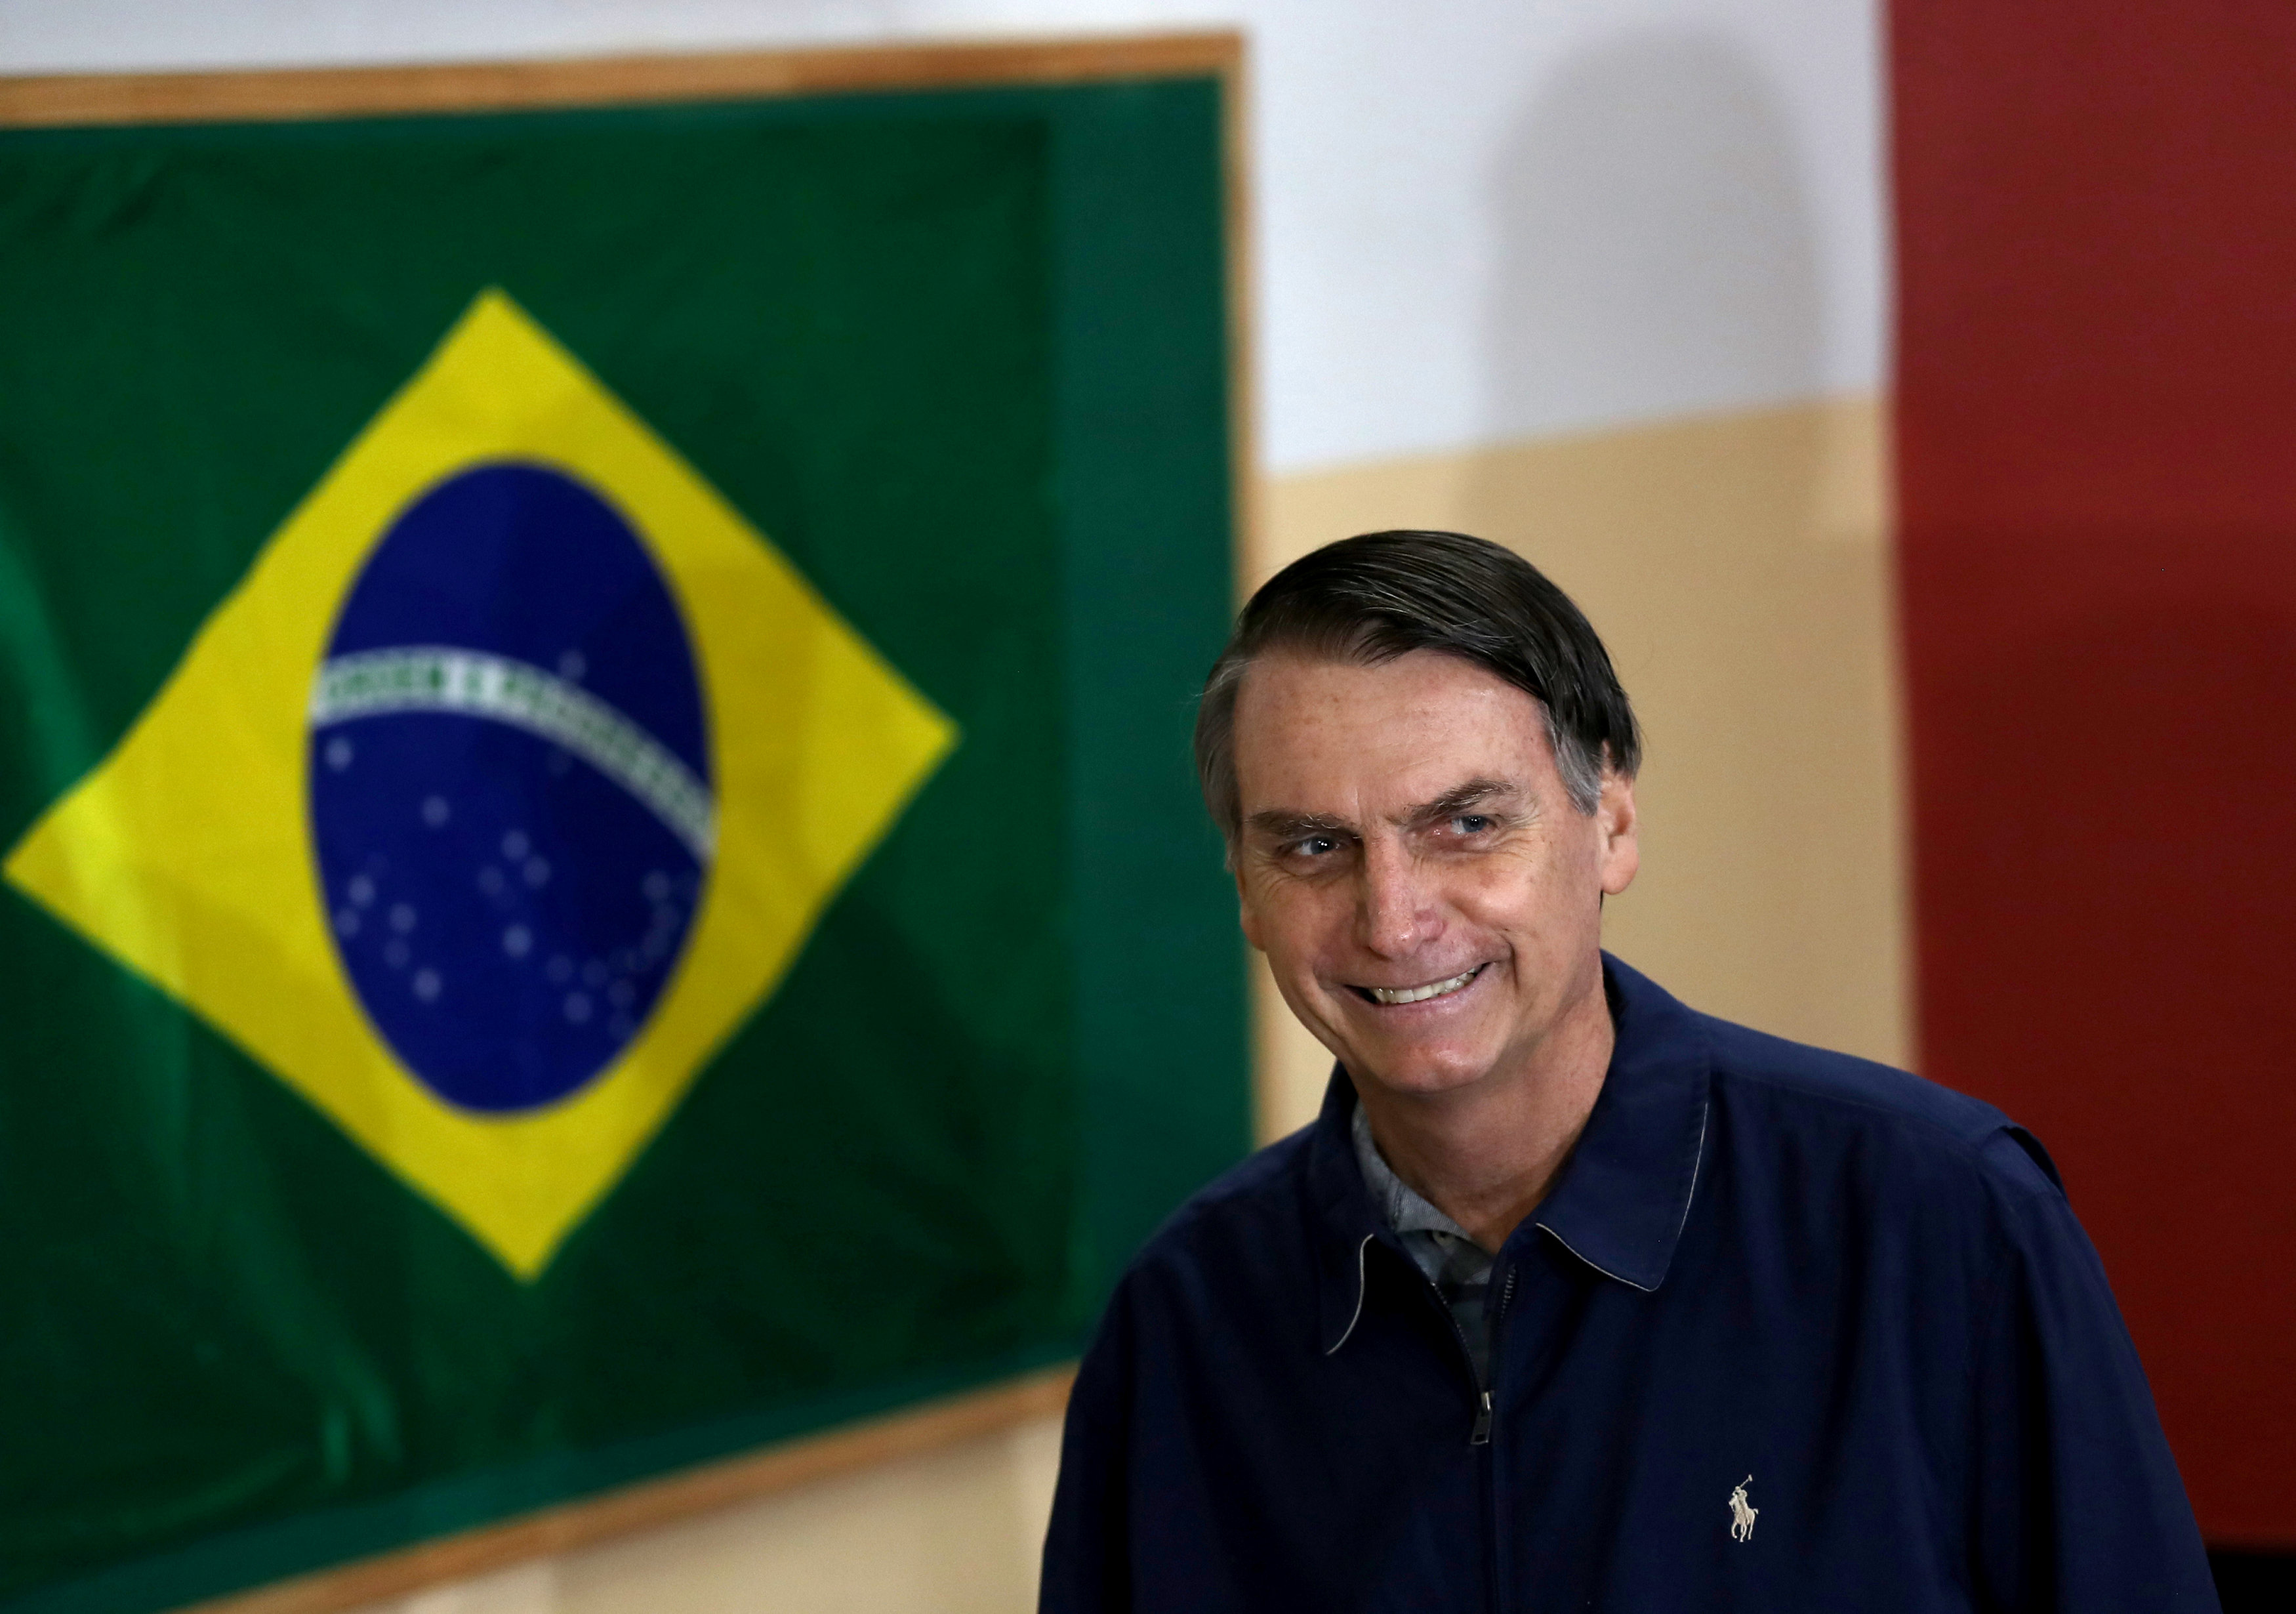 Bolsonaro gana primera vuelta y disputará segunda con Haddad, según el escrutinio oficial